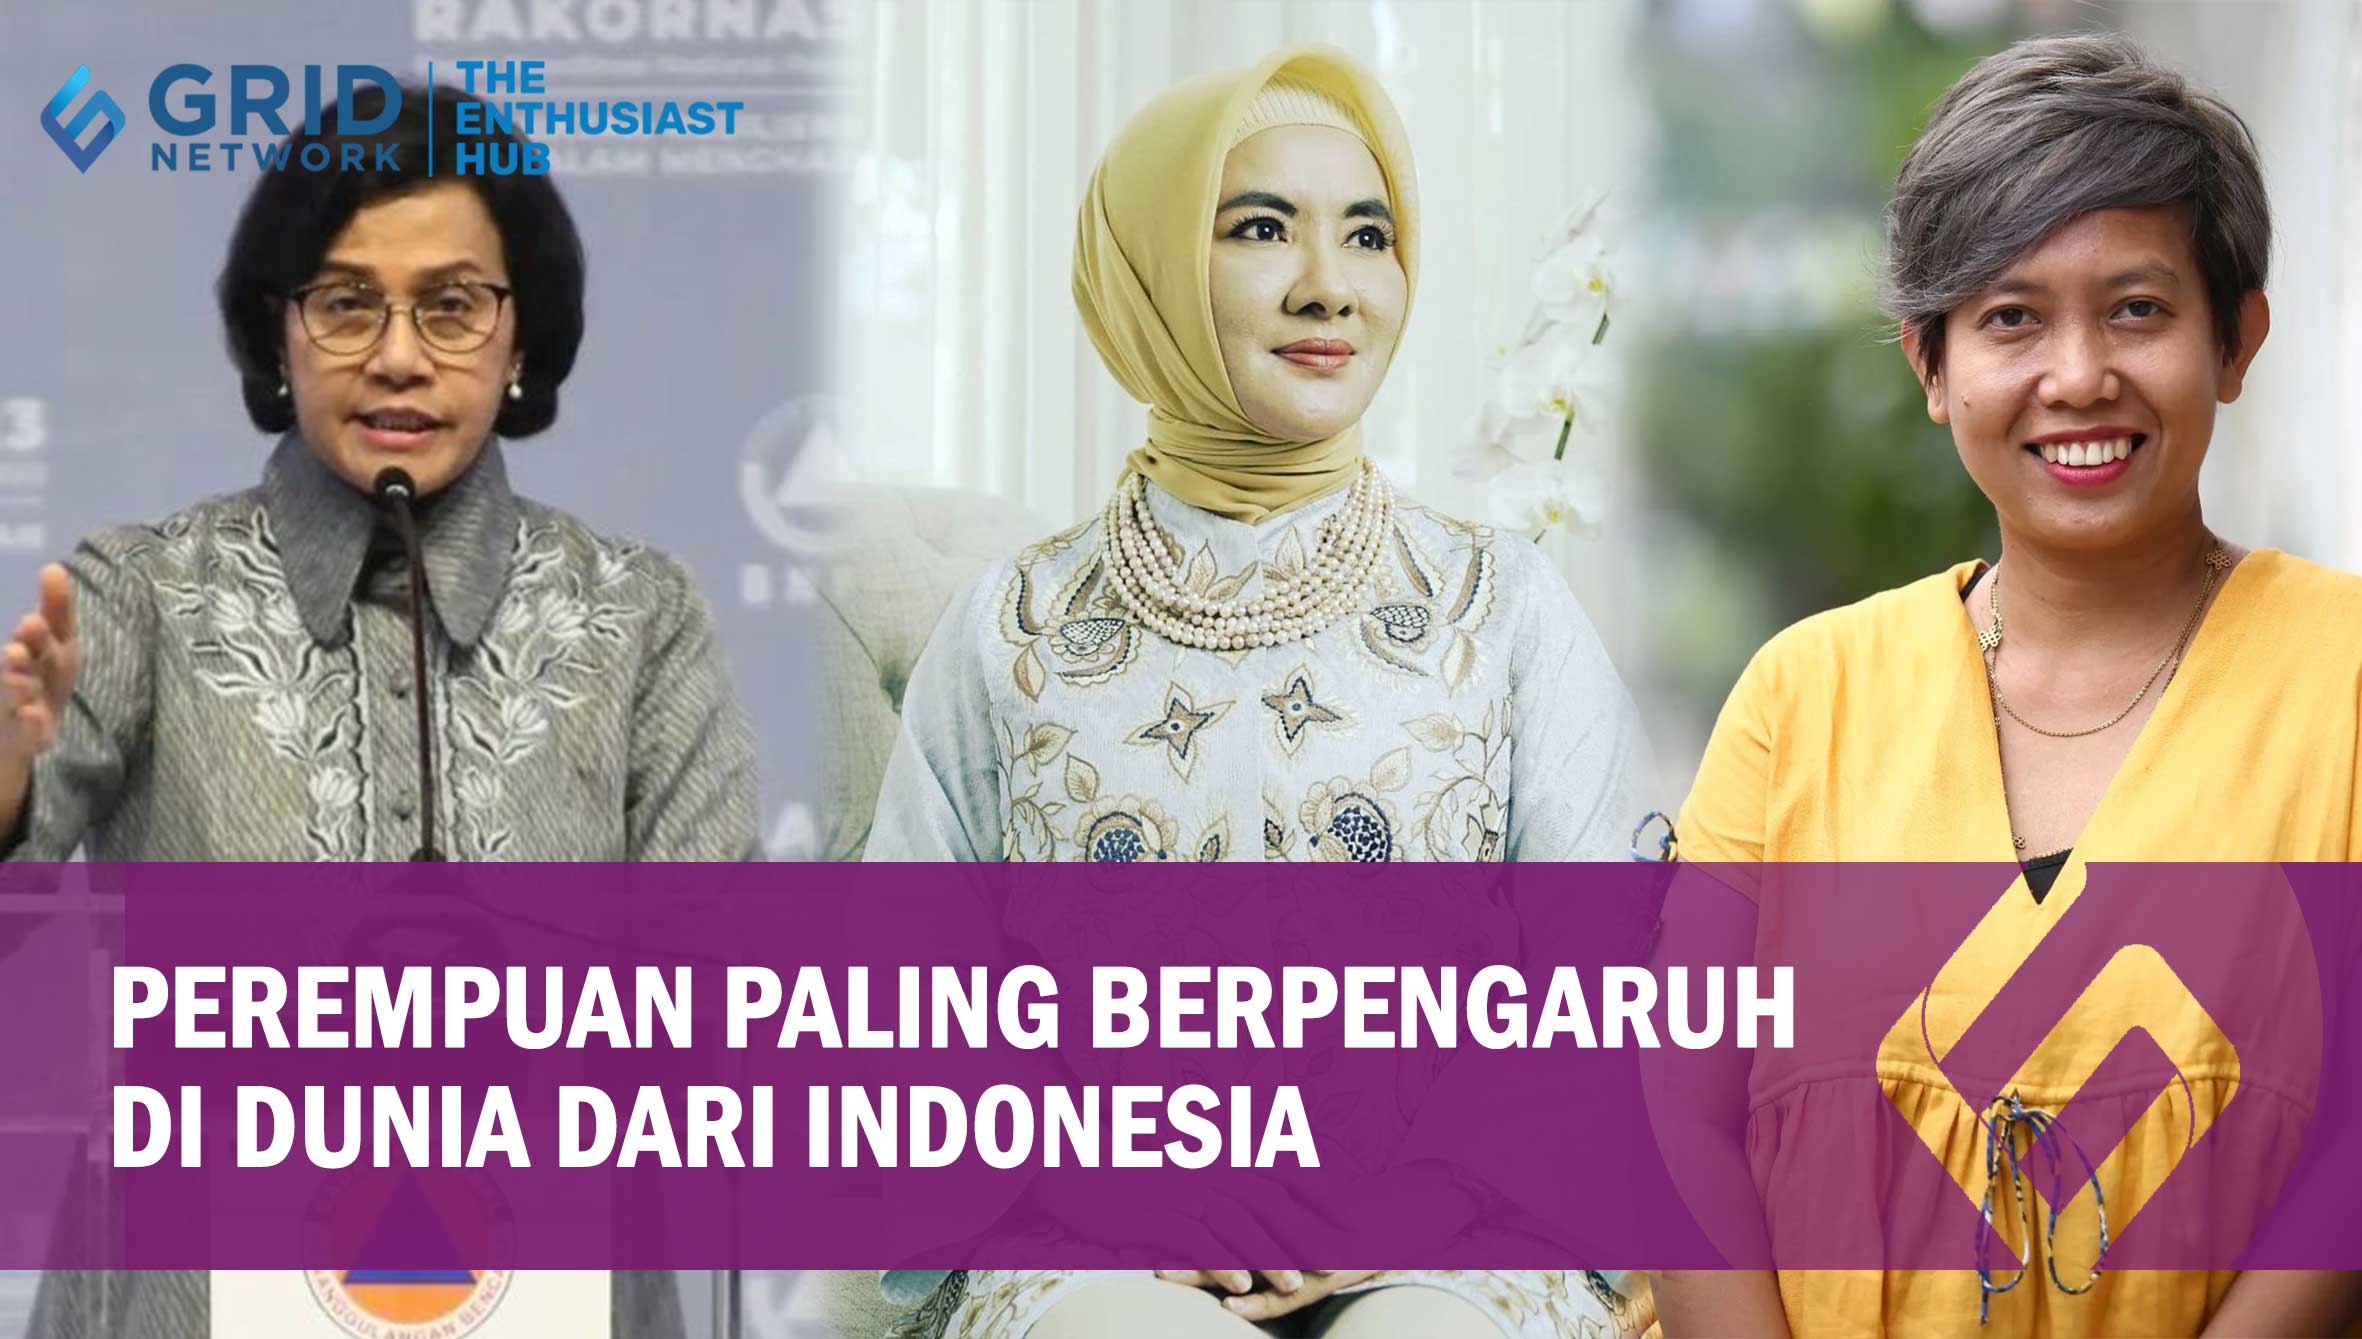 Ini 3 Perempuan Paling Berpengaruh di Dunia dari Indonesia